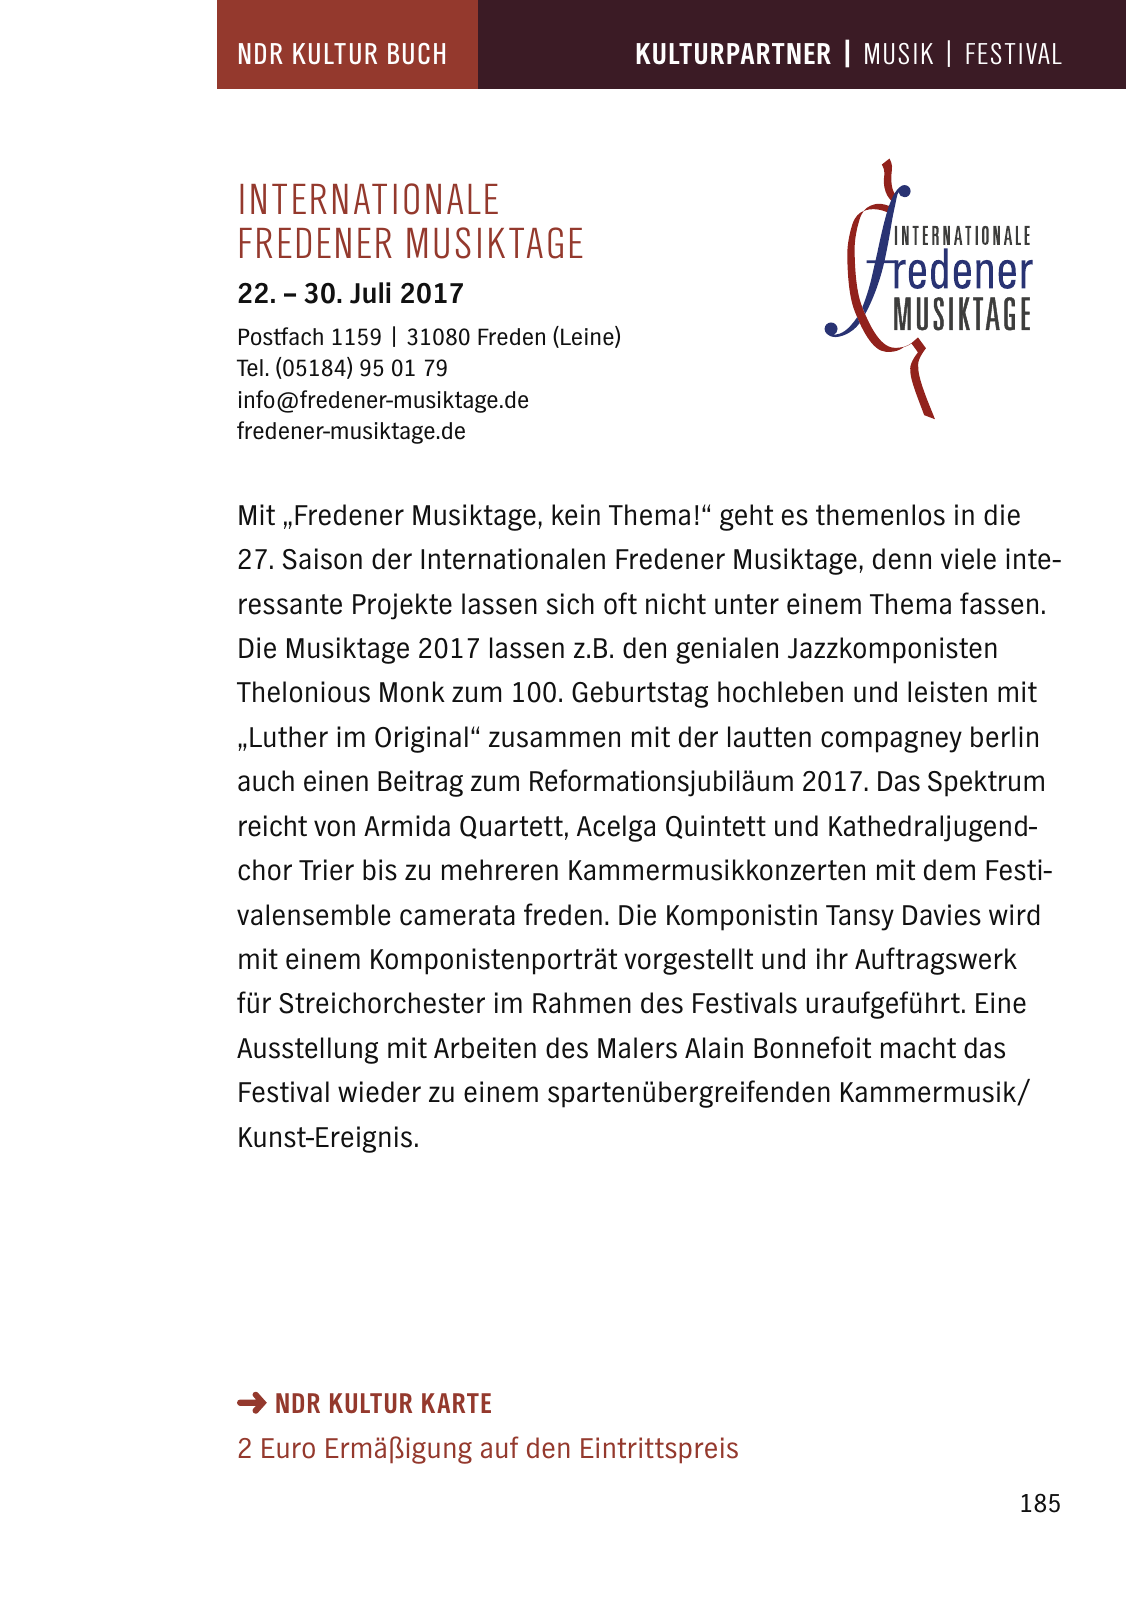 Vorschau NDR Kultur Buch 2017 Seite 187